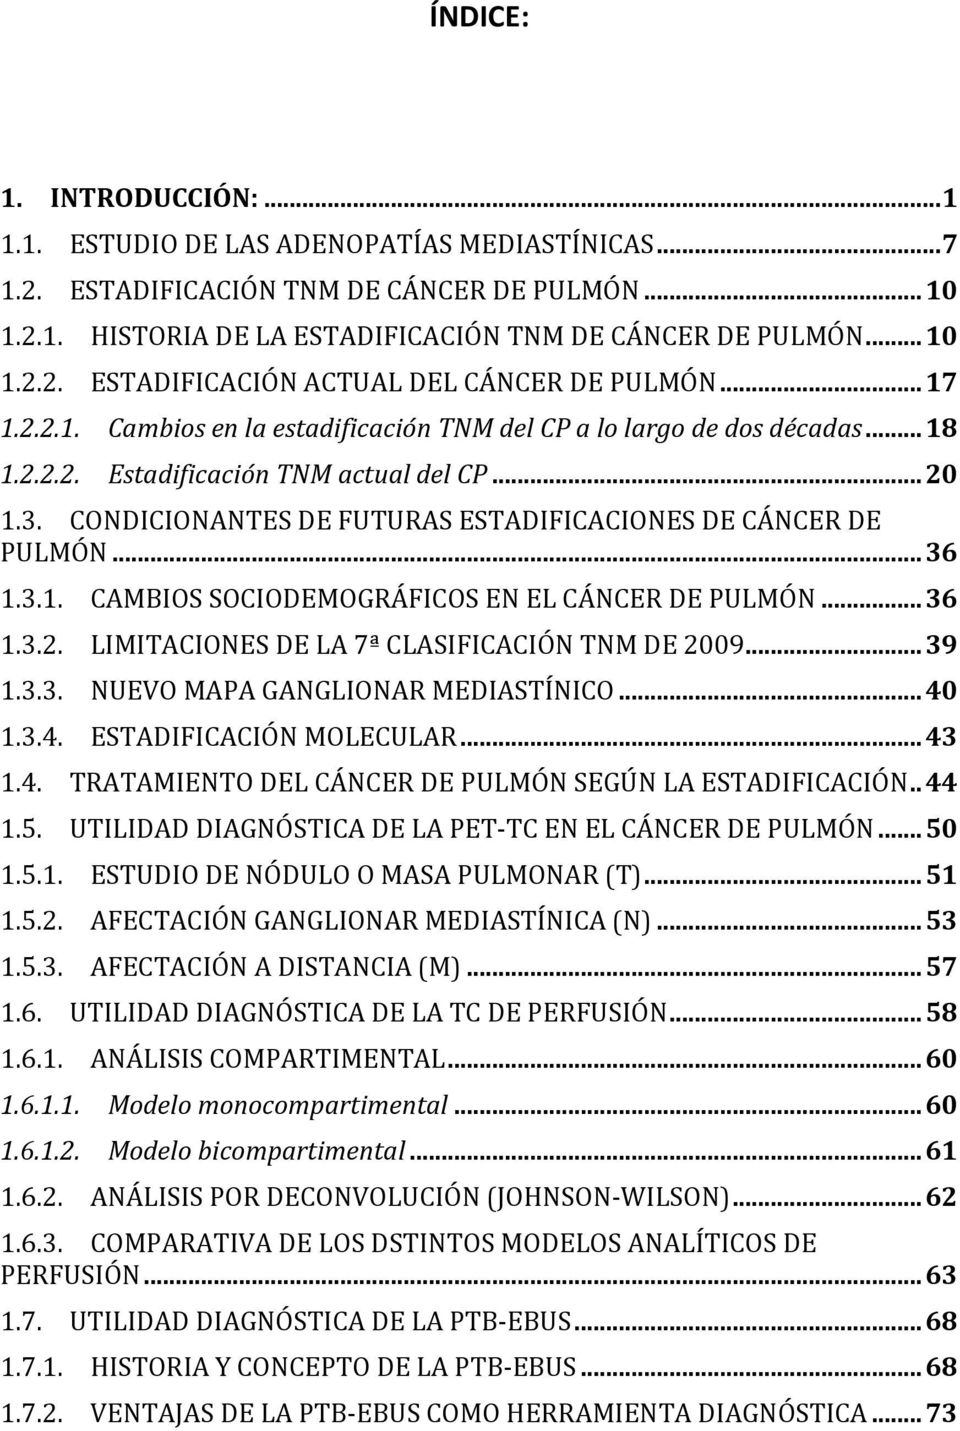 CONDICIONANTES DE FUTURAS ESTADIFICACIONES DE CÁNCER DE PULMÓN... 36 1.3.1. CAMBIOS SOCIODEMOGRÁFICOS EN EL CÁNCER DE PULMÓN... 36 1.3.2. LIMITACIONES DE LA 7ª CLASIFICACIÓN TNM DE 2009... 39 1.3.3. NUEVO MAPA GANGLIONAR MEDIASTÍNICO.